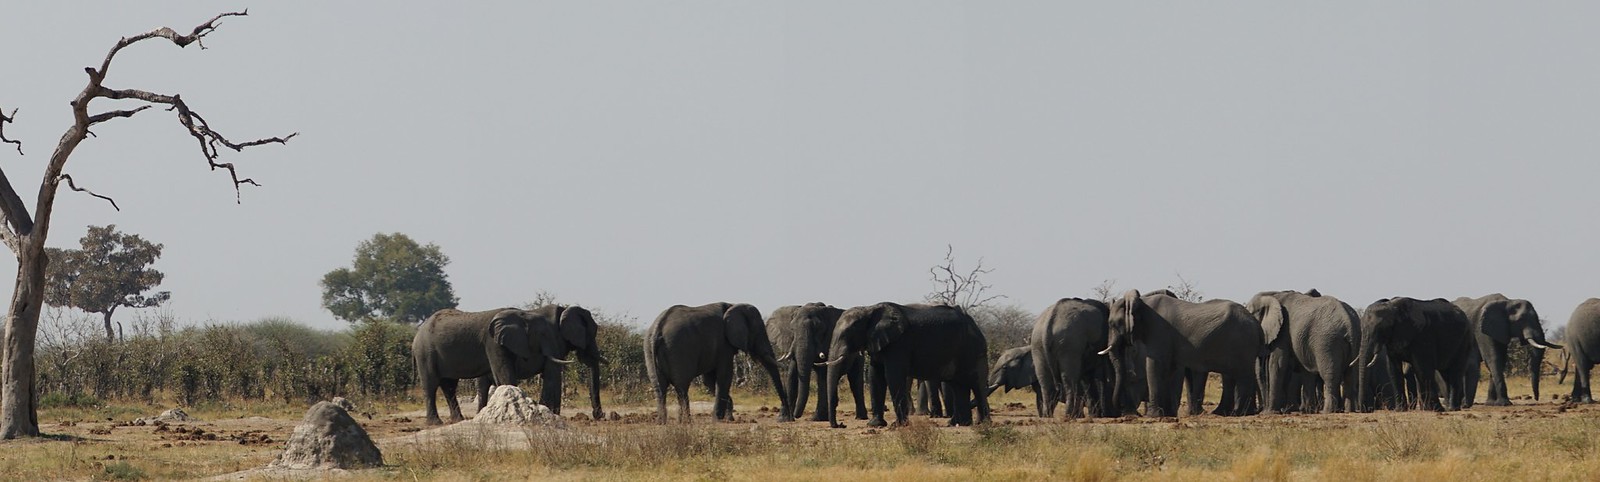 De Moremi a Savuti, entre jirafas y elefantes - BOTSWANA, ZIMBABWE Y CATARATAS VICTORIA: Tras la Senda de los Elefantes (27)